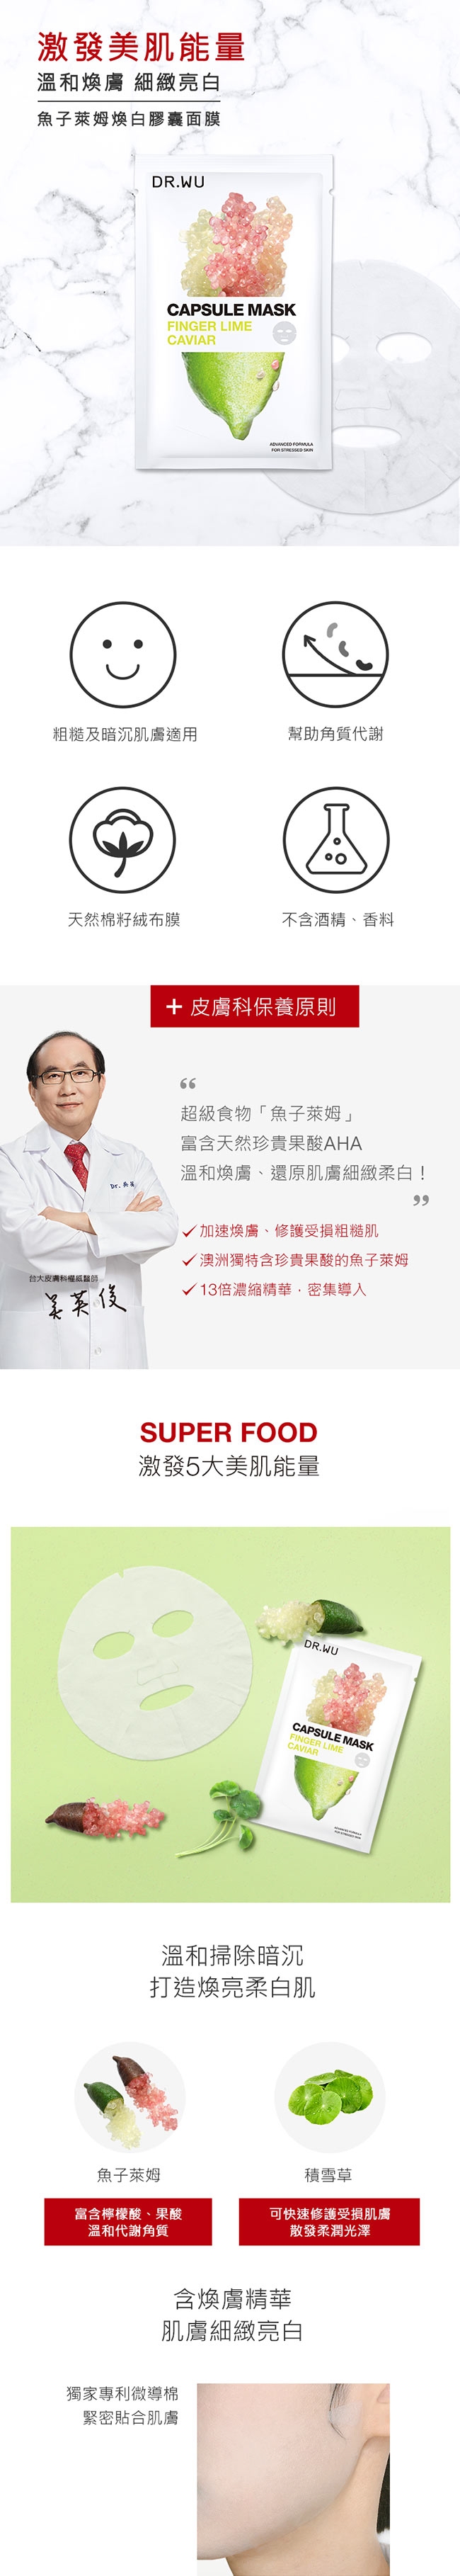 DR.WU超級食物煥白修護面膜雙入組